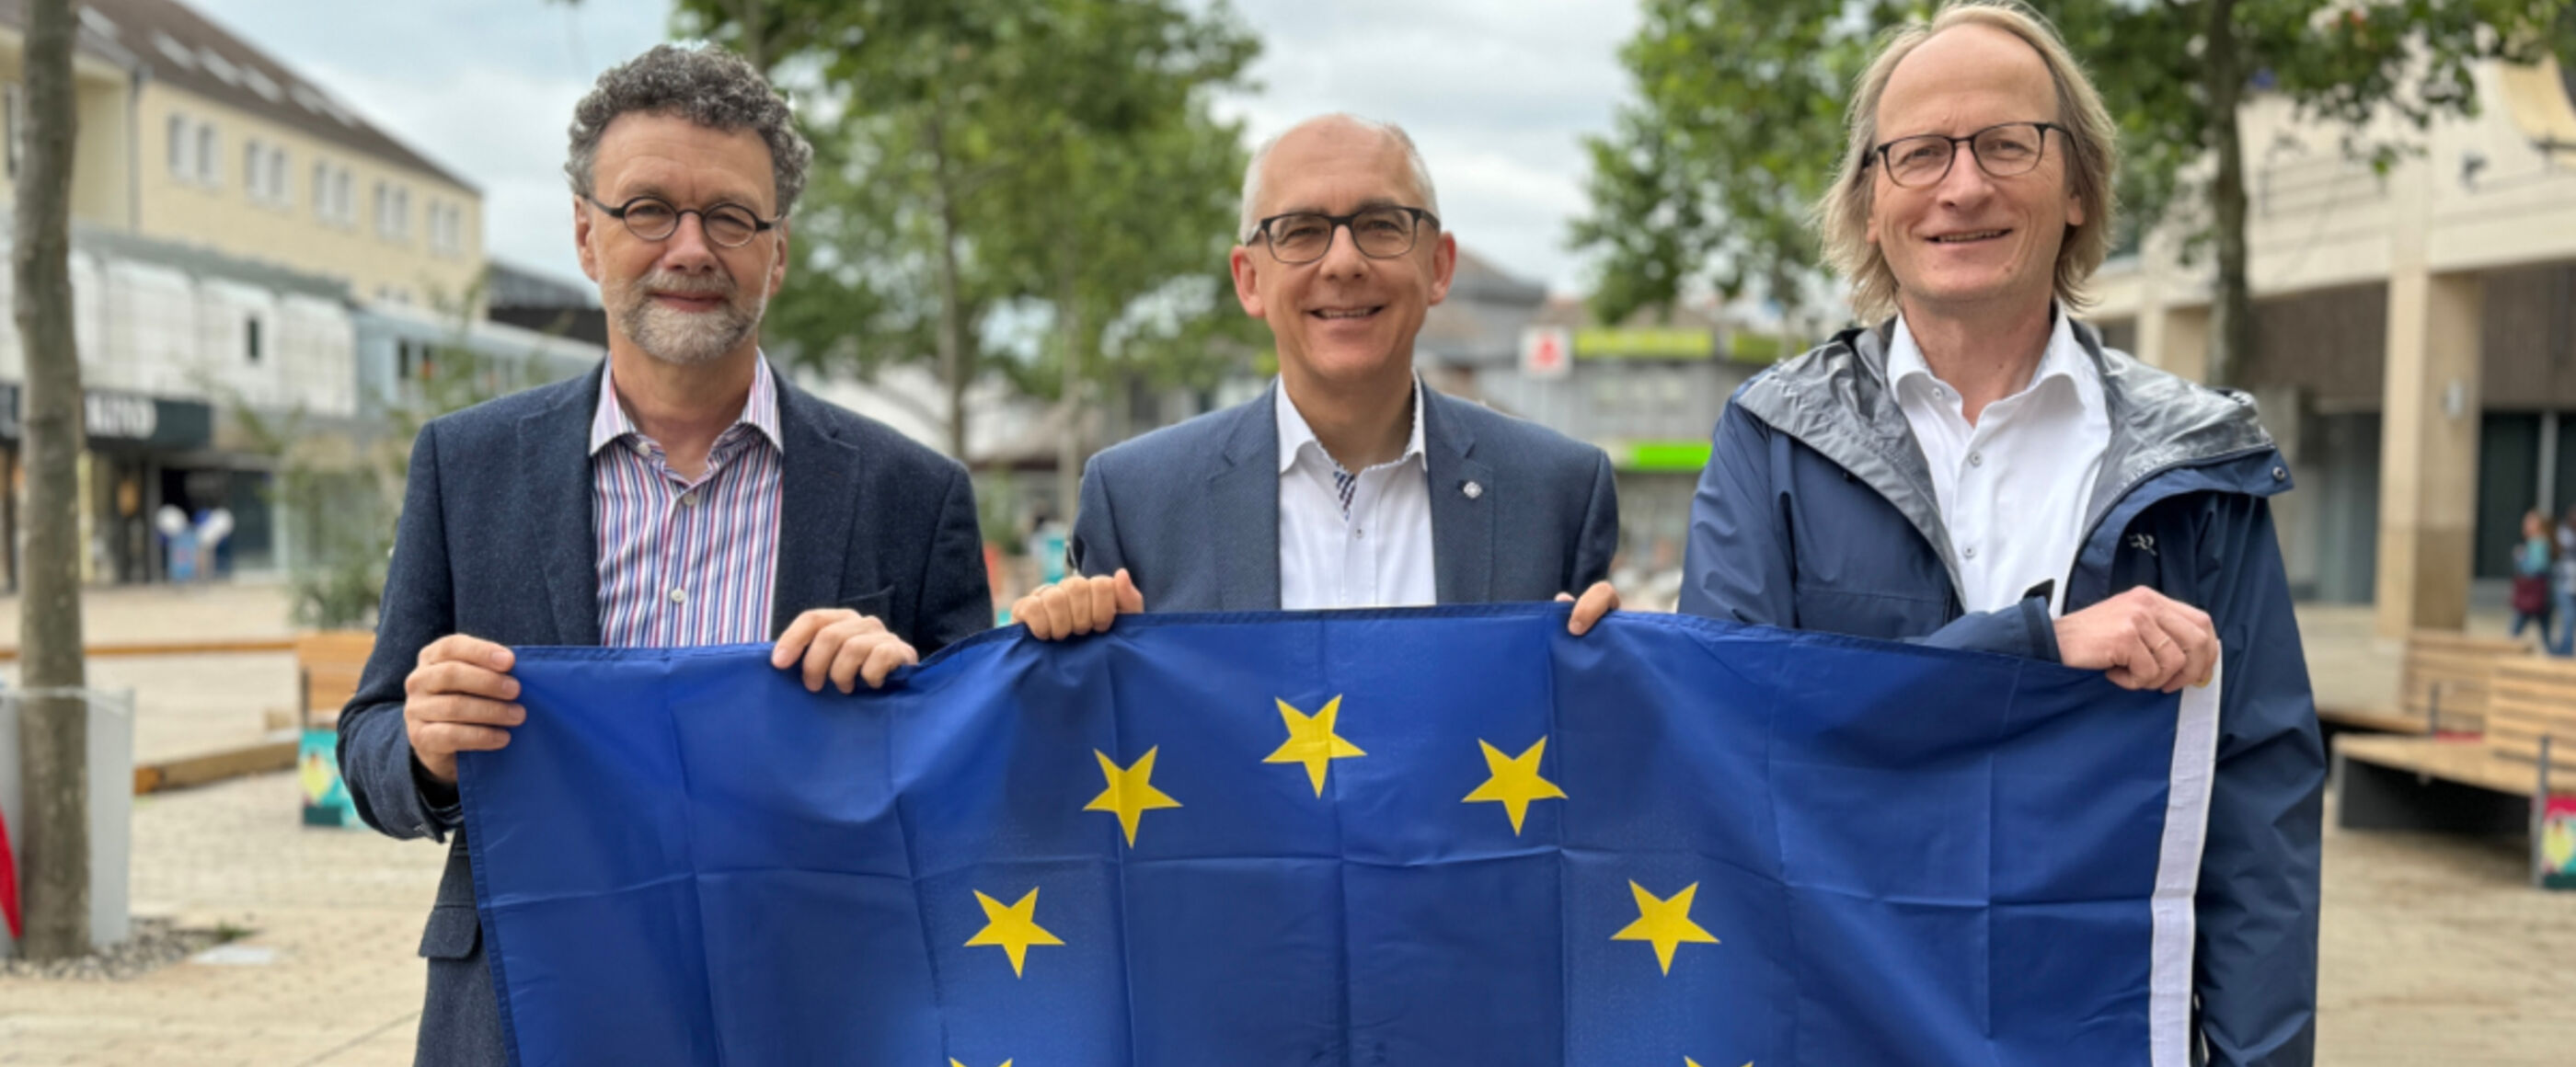 drei männlich gelesene Personen halten eine Europaflagge in der Hand.